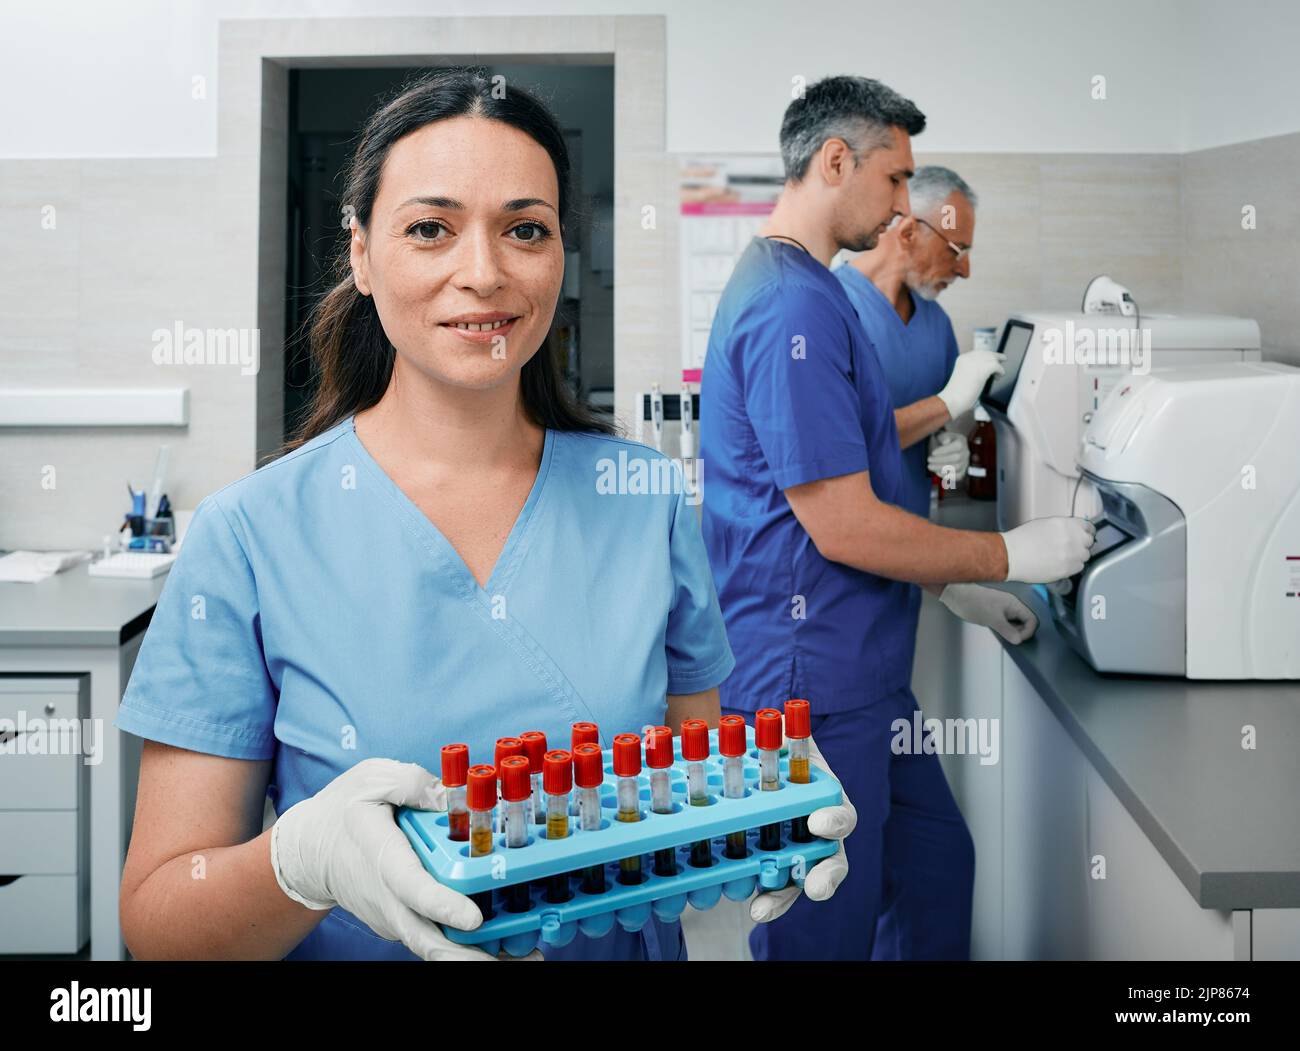 Científico de laboratorio de diagnóstico que sostiene un rack de tubos de ensayo con muestras de sangre cerca de trabajadores de laboratorio que realizan investigaciones en máquinas de laboratorio Foto de stock